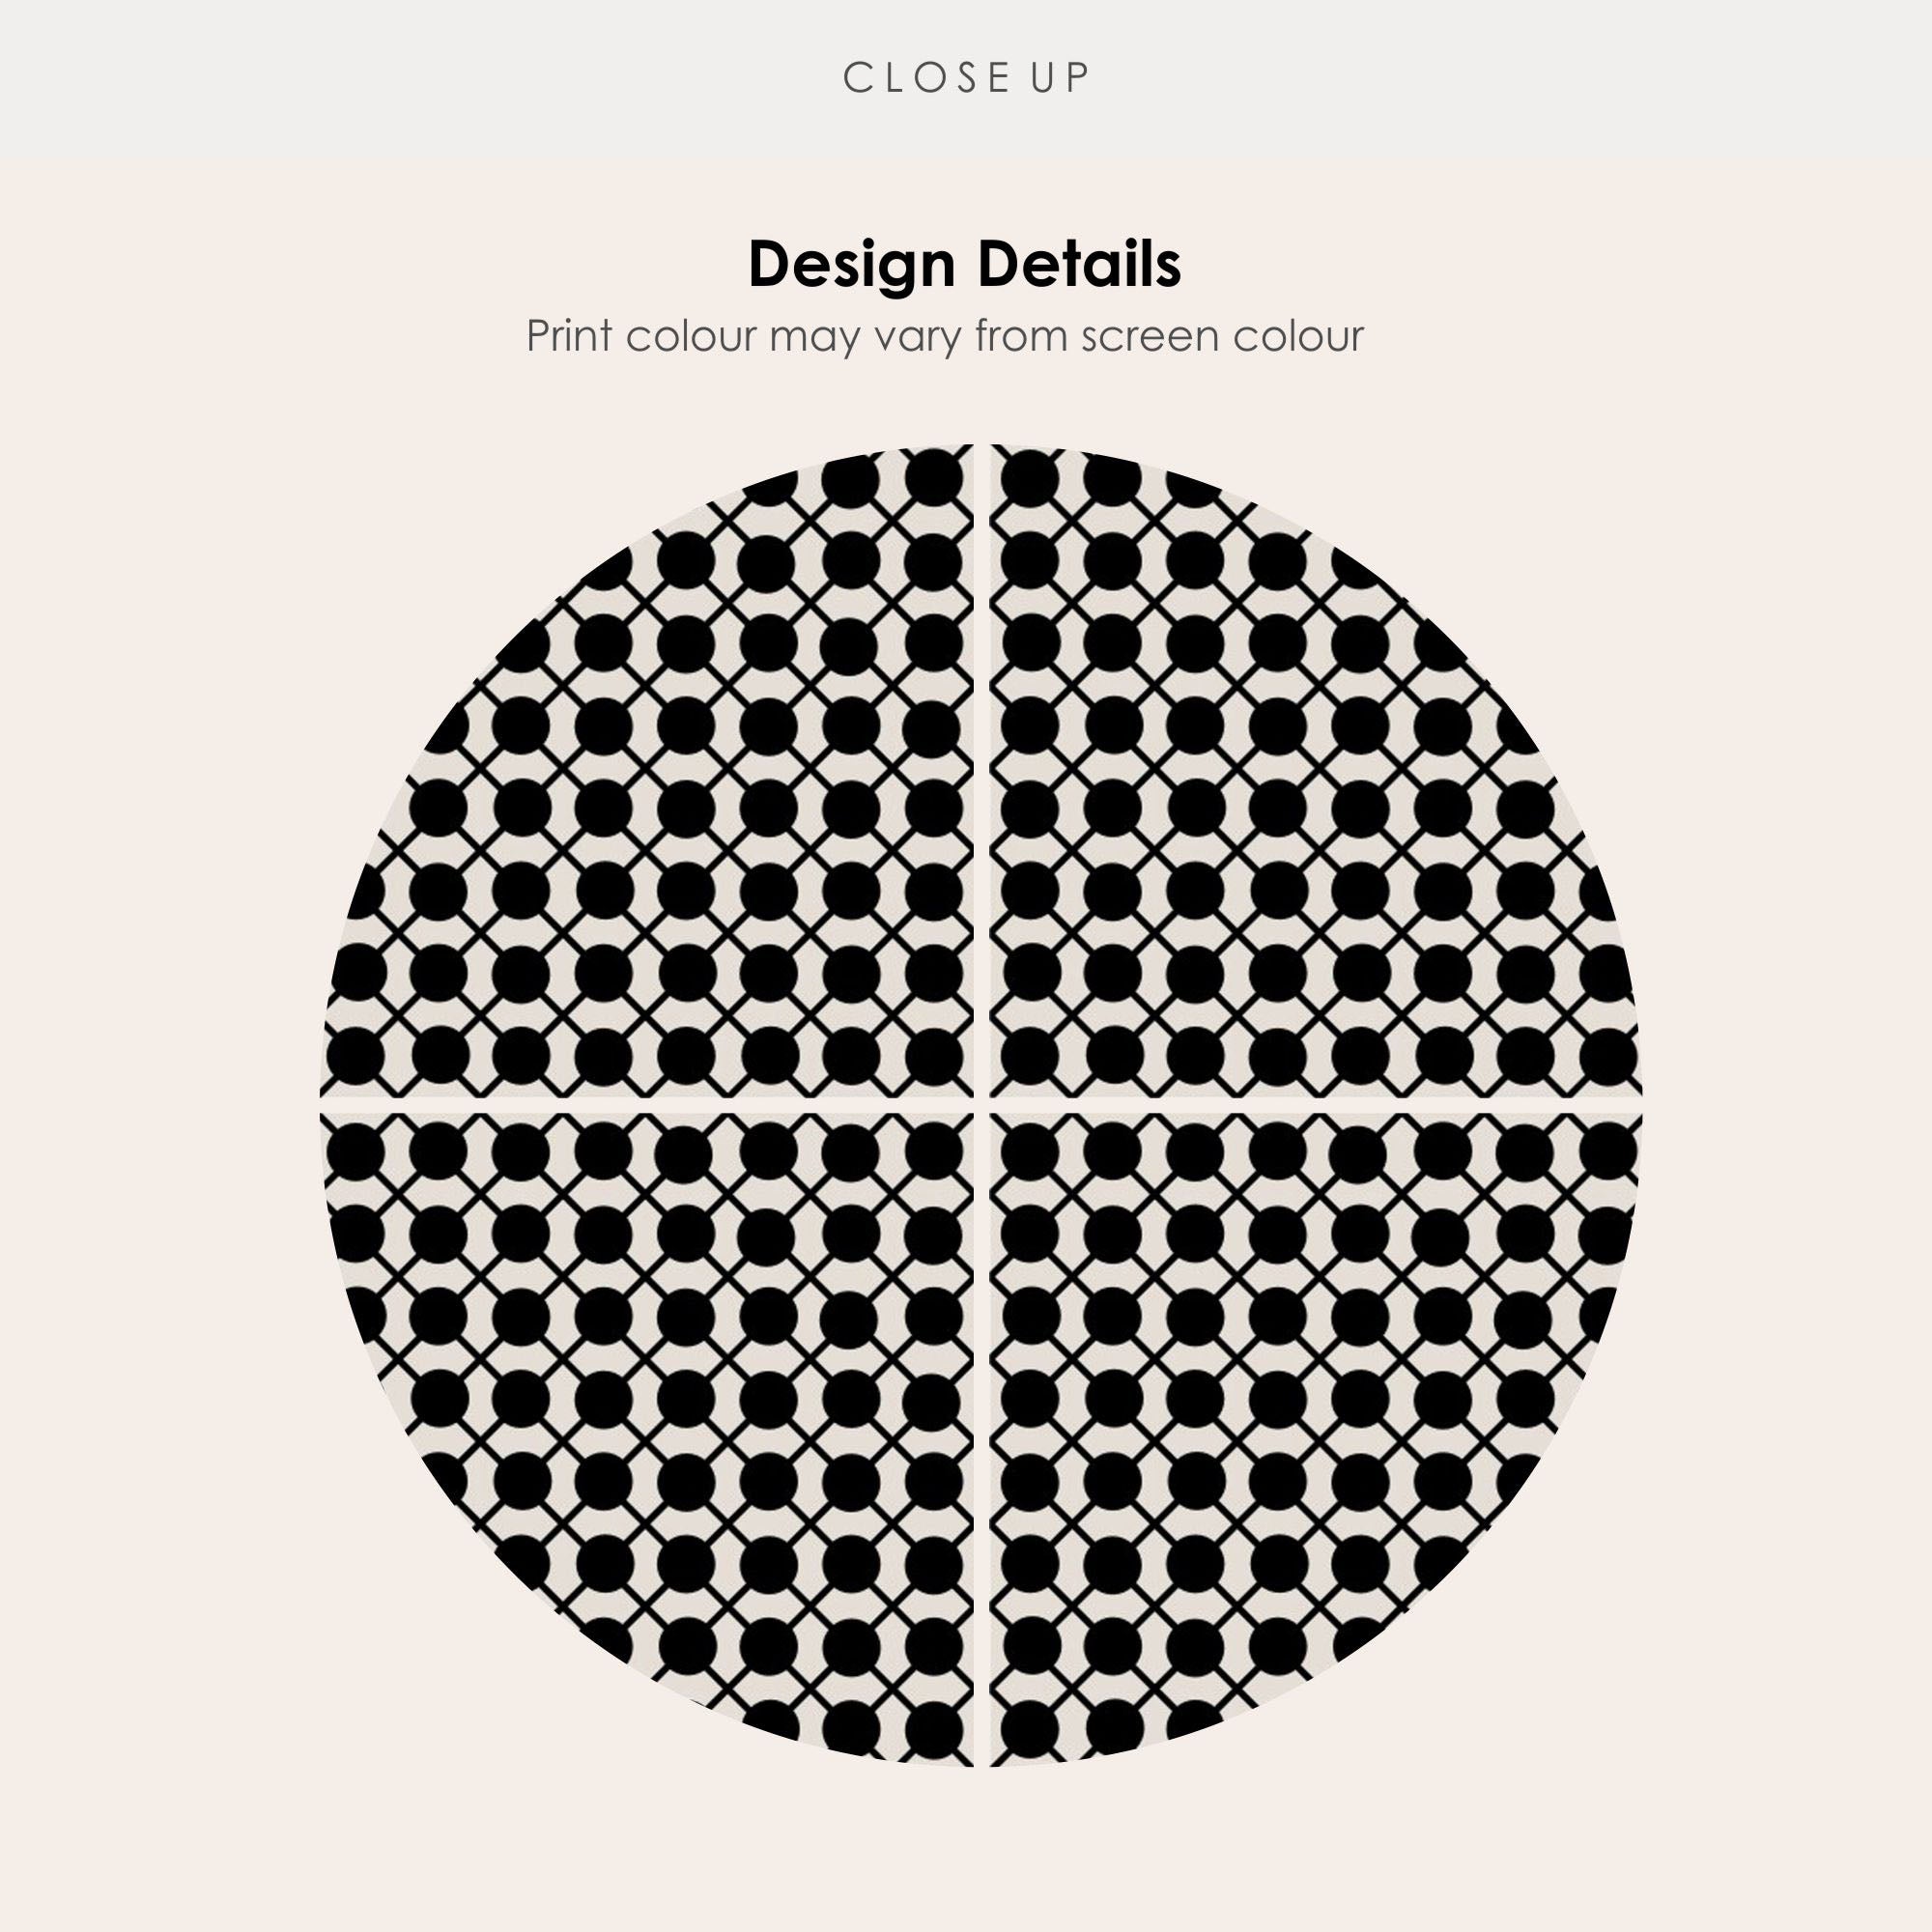 Dot to Dot in Black Vinyl Tile Sticker